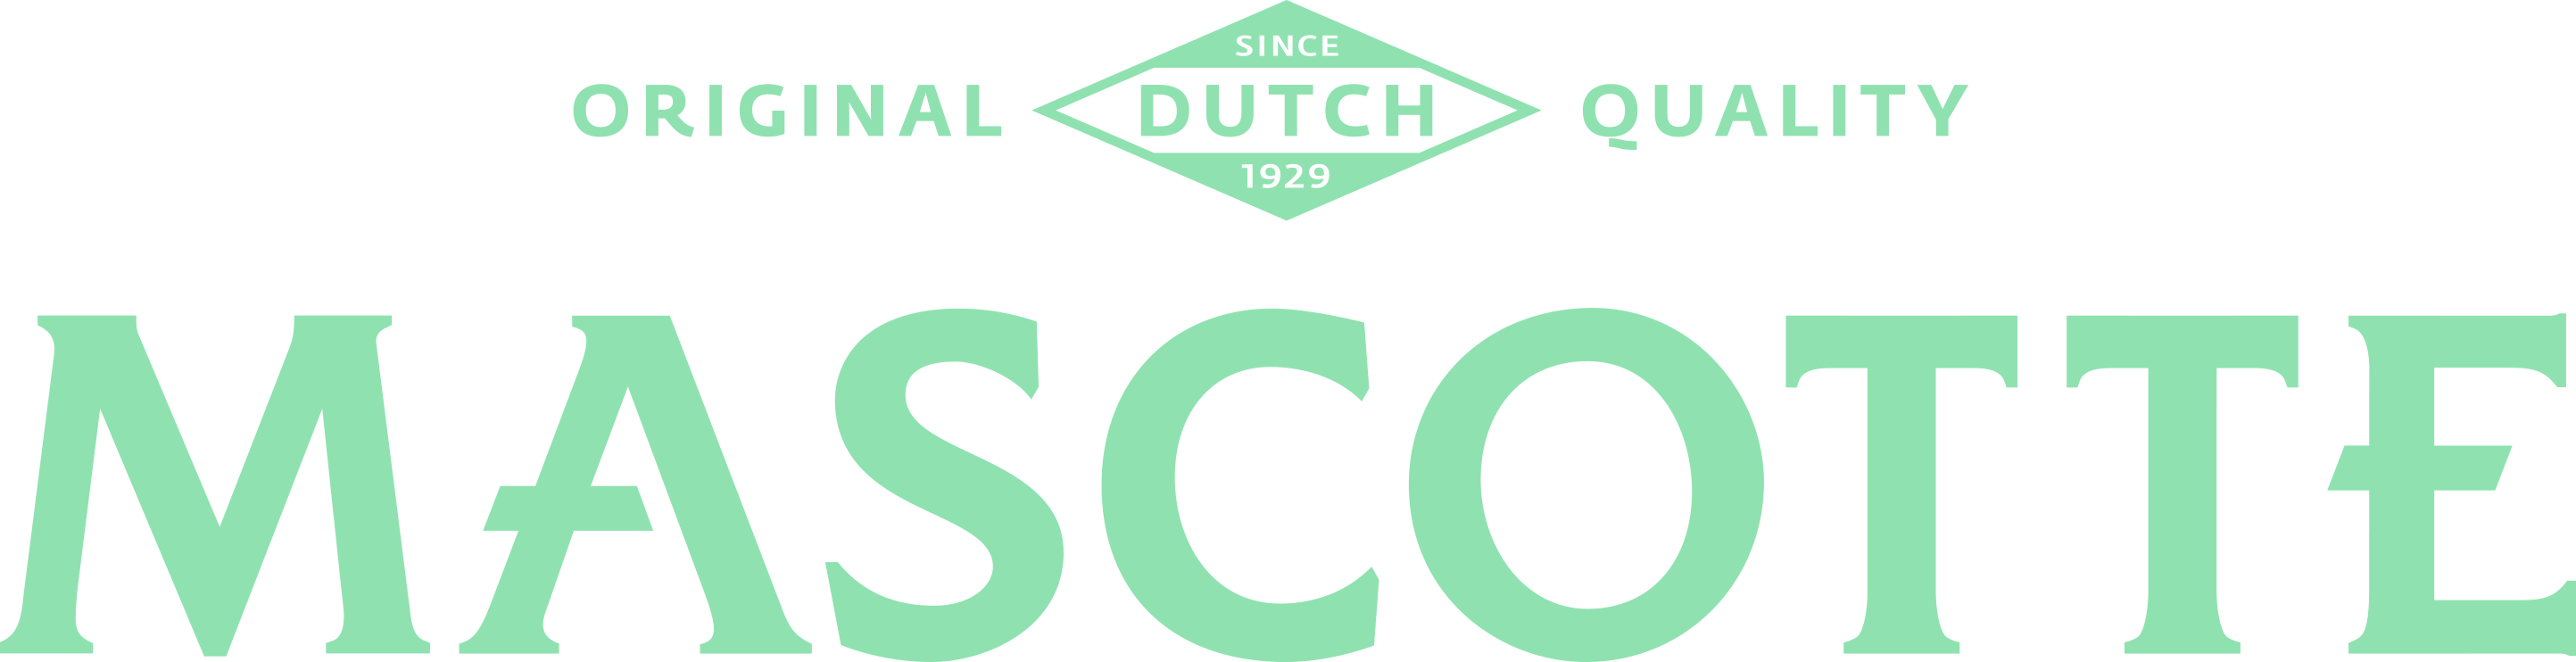 Mascotte logo Green